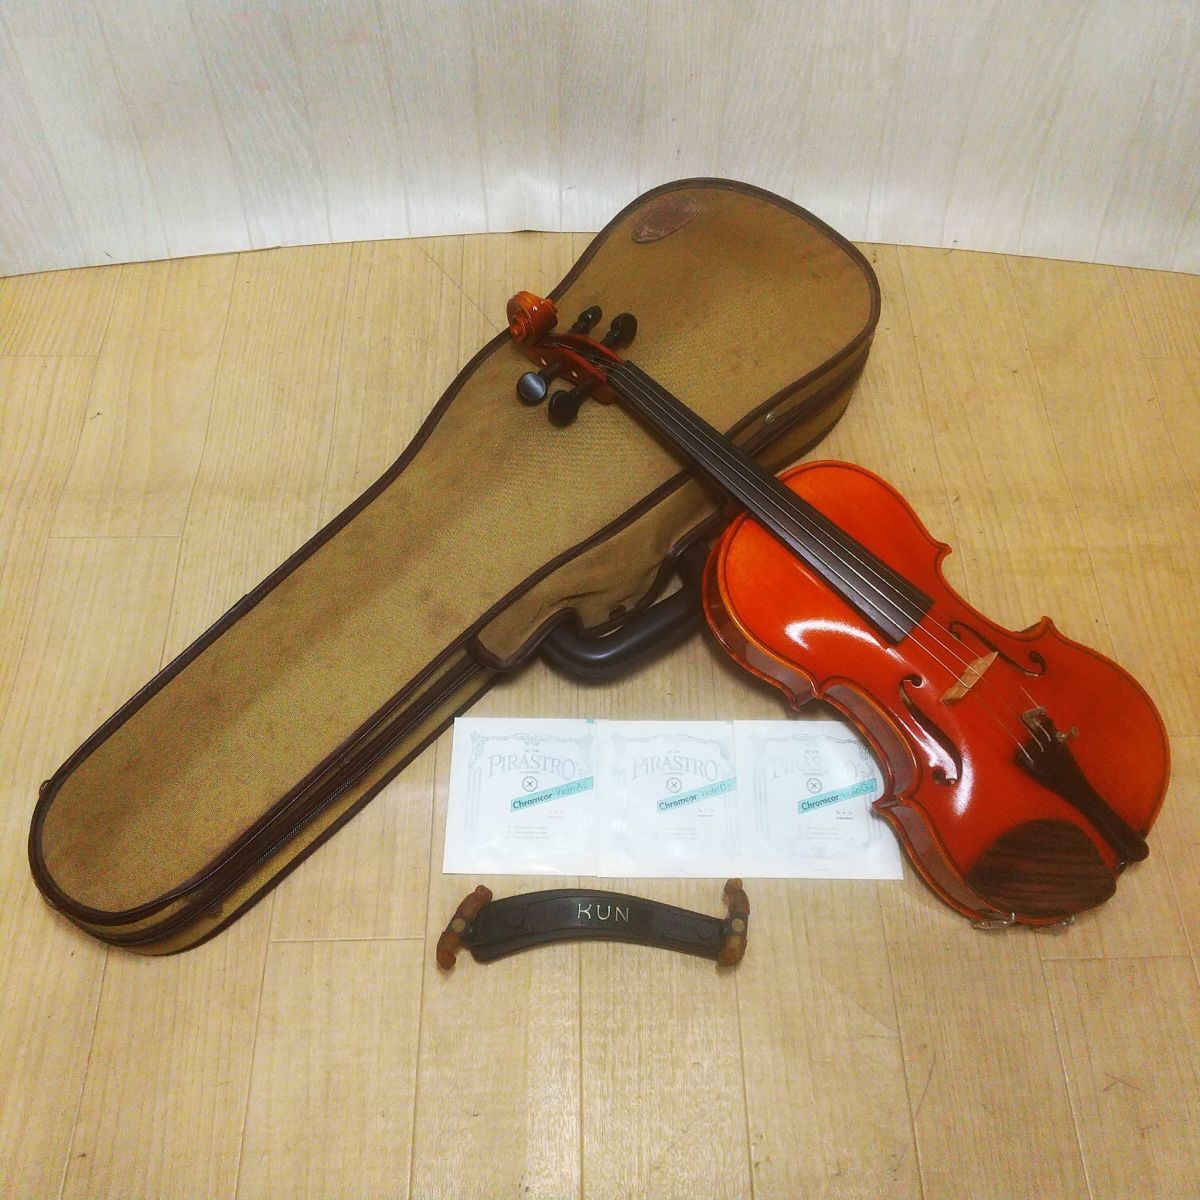 訳あり商品 No.520 バイオリン SUZUKI 1/8 ヴァイオリン 子供用 弦楽器 